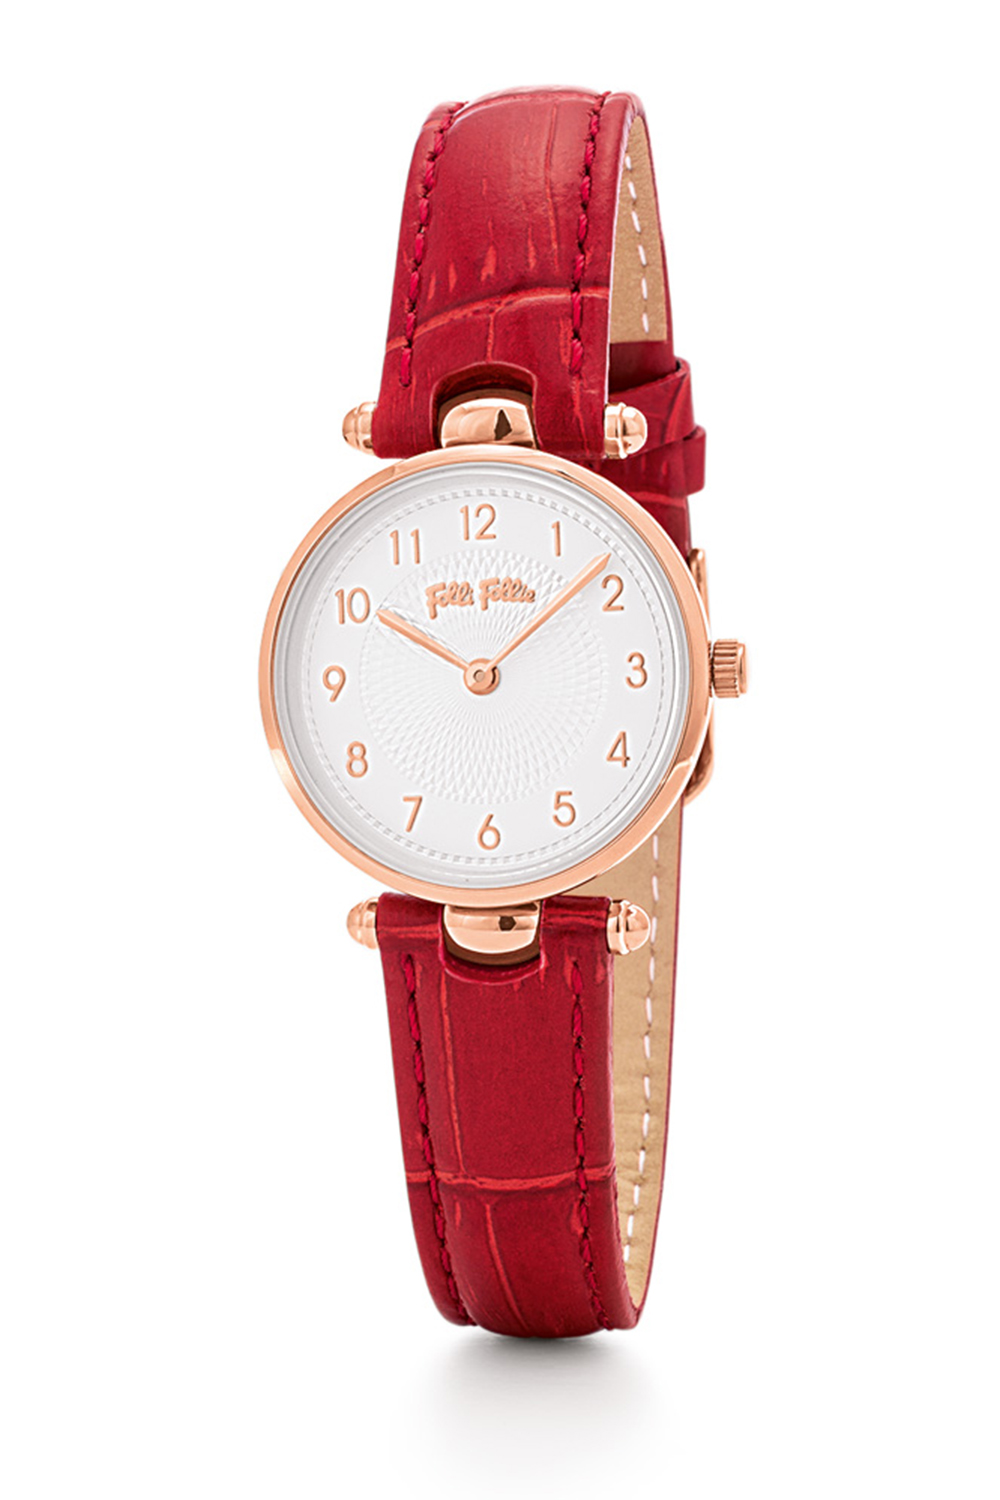 FOLLI FOLLIE – Γυναικείο ρολόι με δερμάτινο λουράκι FOLLI FOLLIE LADY CLUB κόκκινο WF17R014SSS-DR